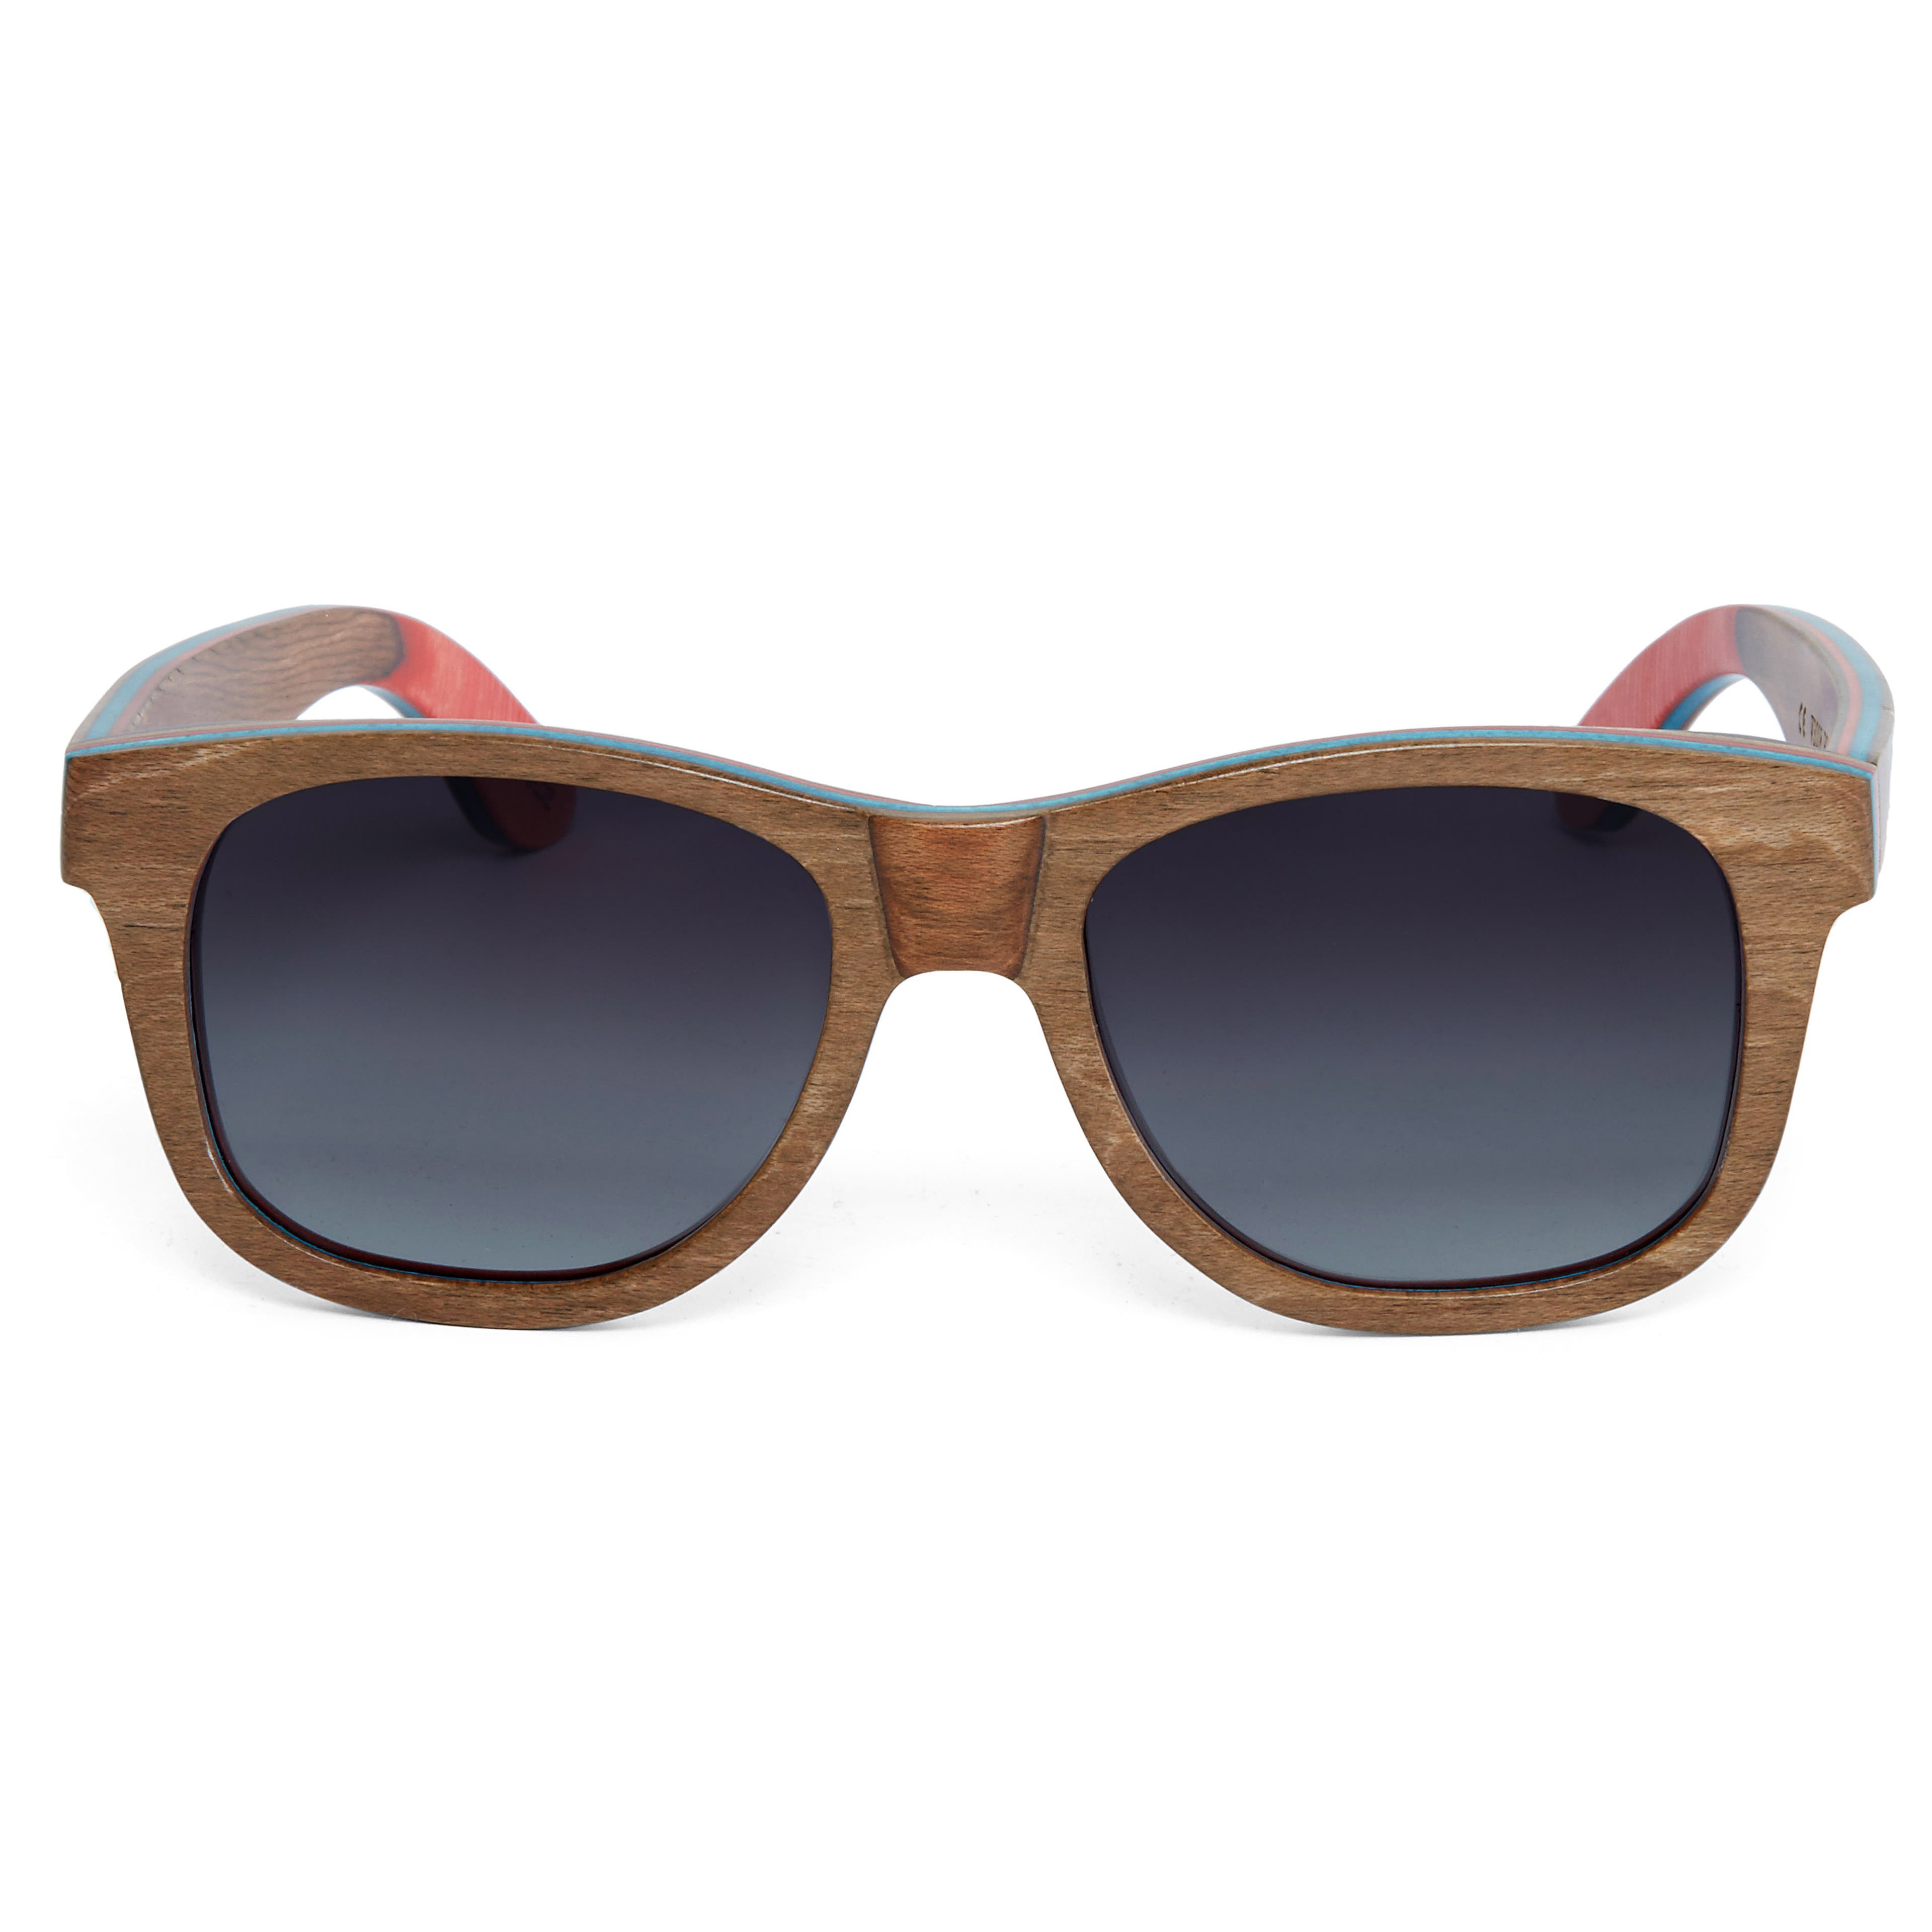 Brązowo-szare drewniane deskorolkowe polaryzacyjne okulary przeciwsłoneczne